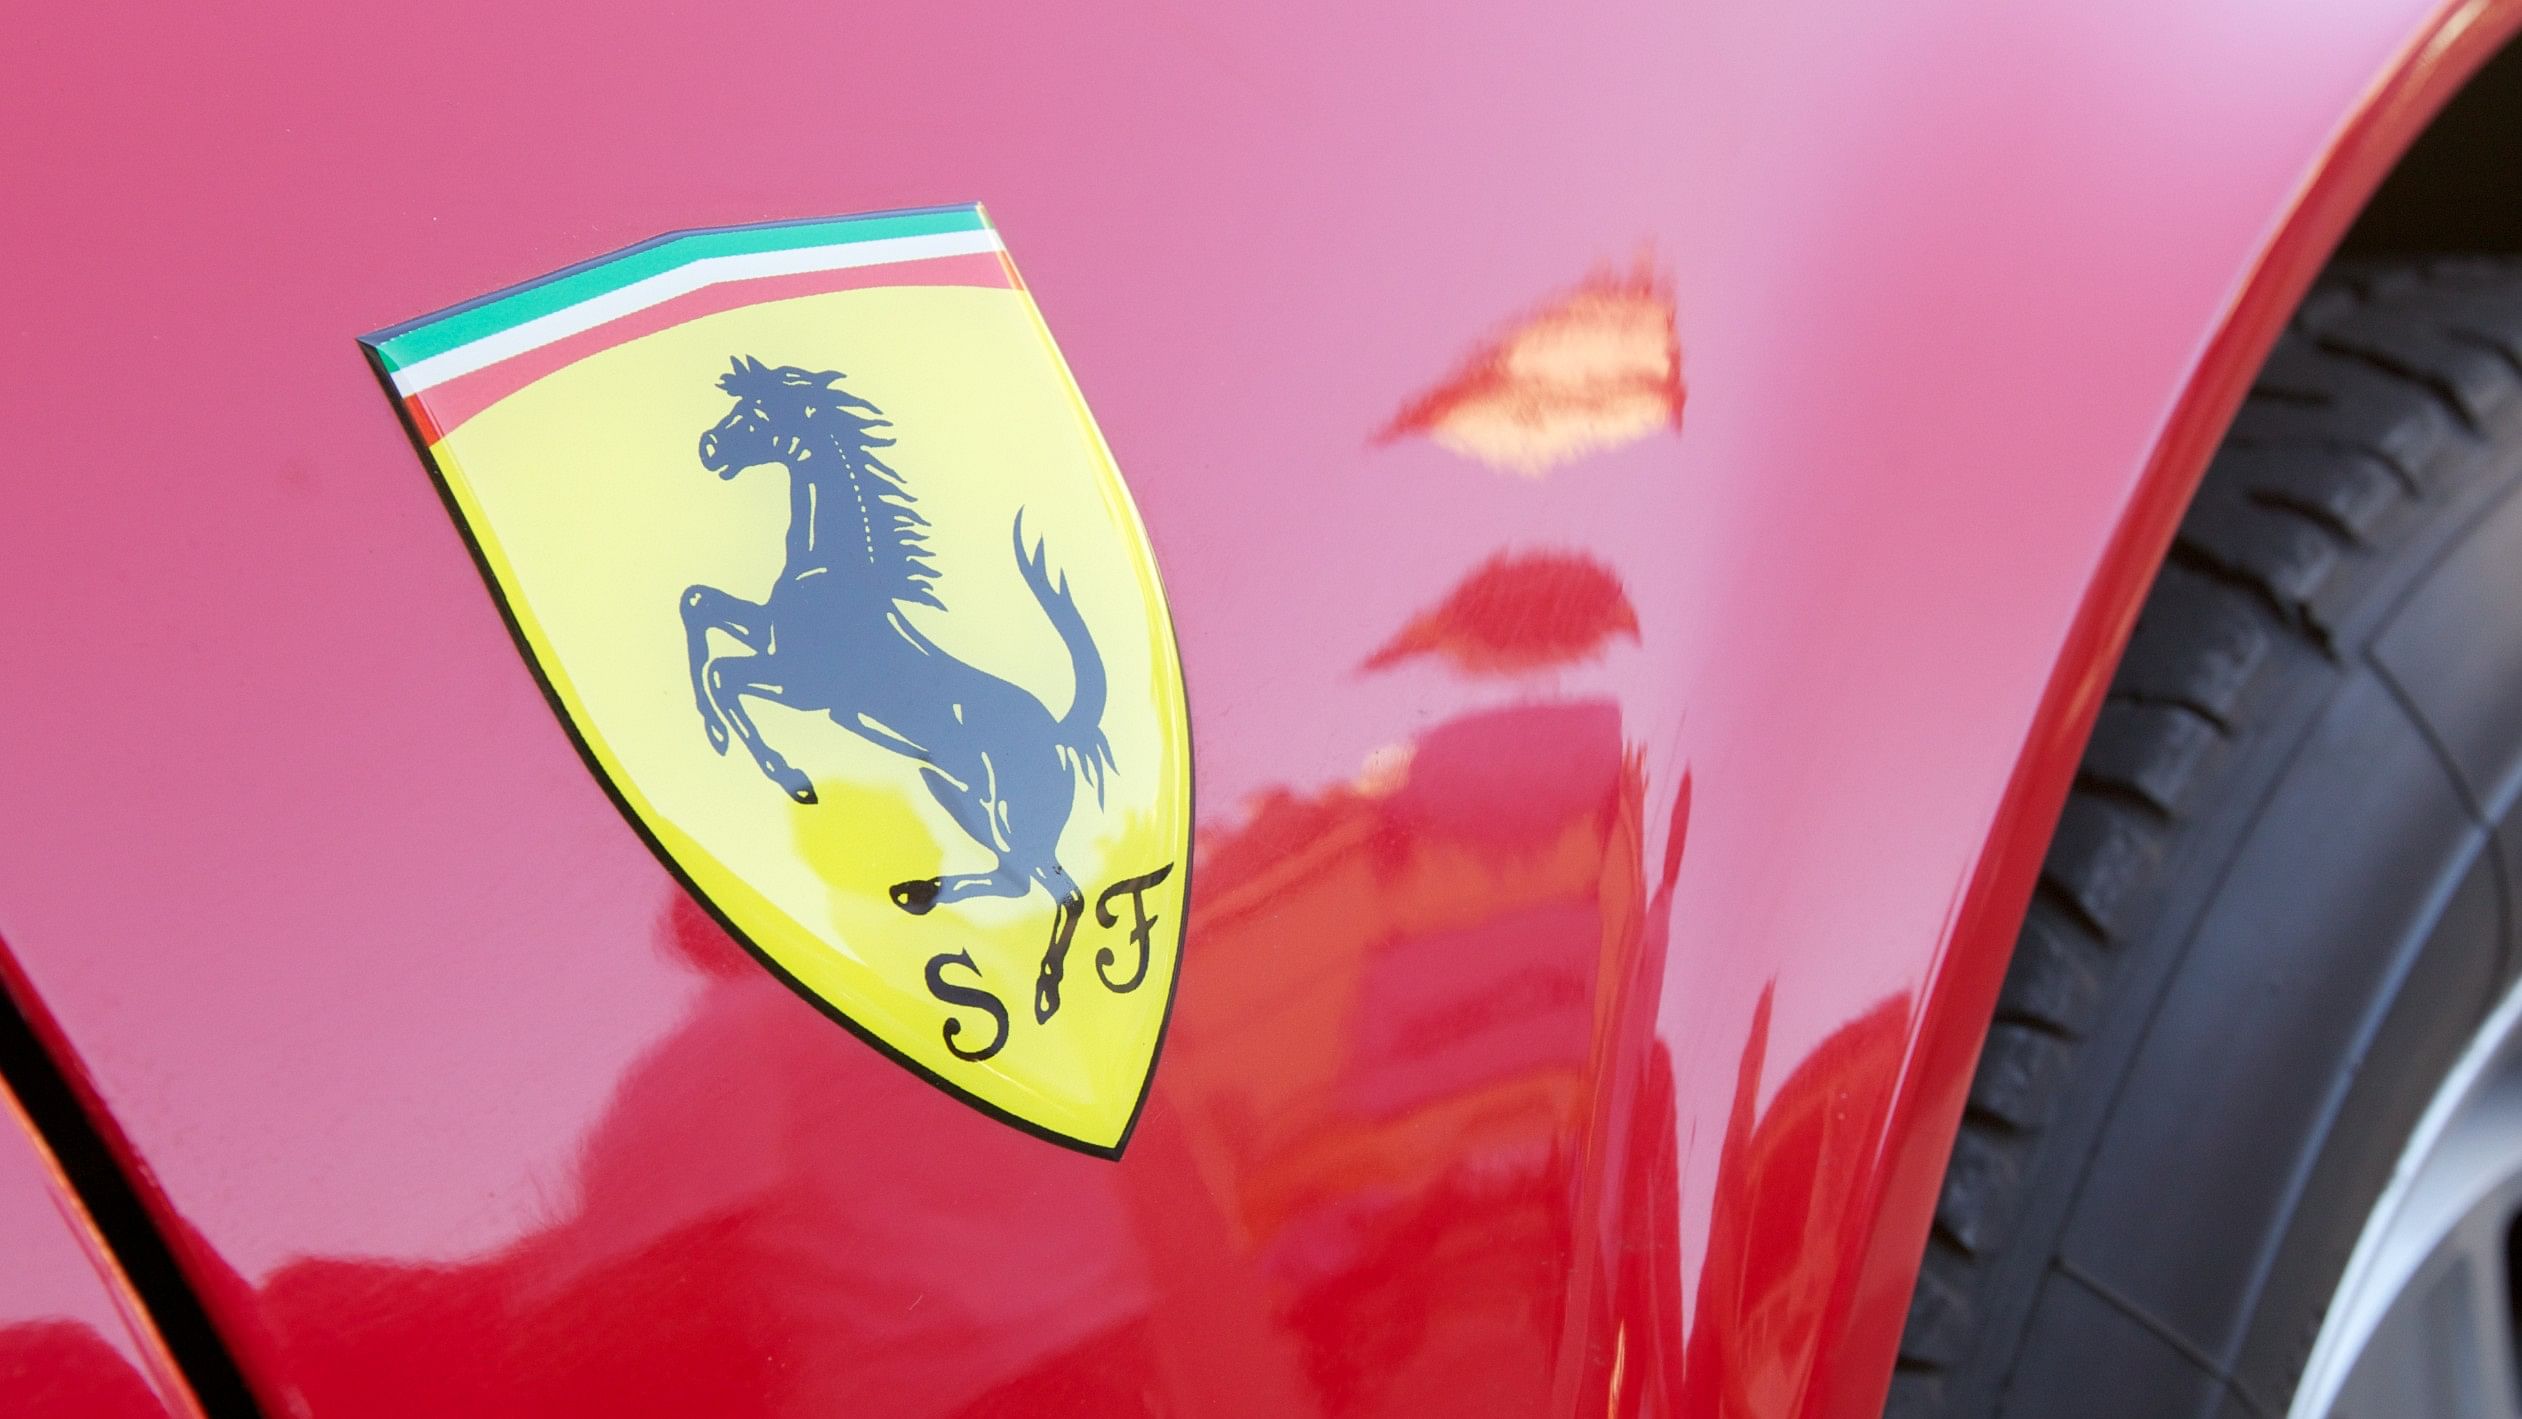 <div class="paragraphs"><p>Representative image showing a Ferrari with its logo.</p></div>